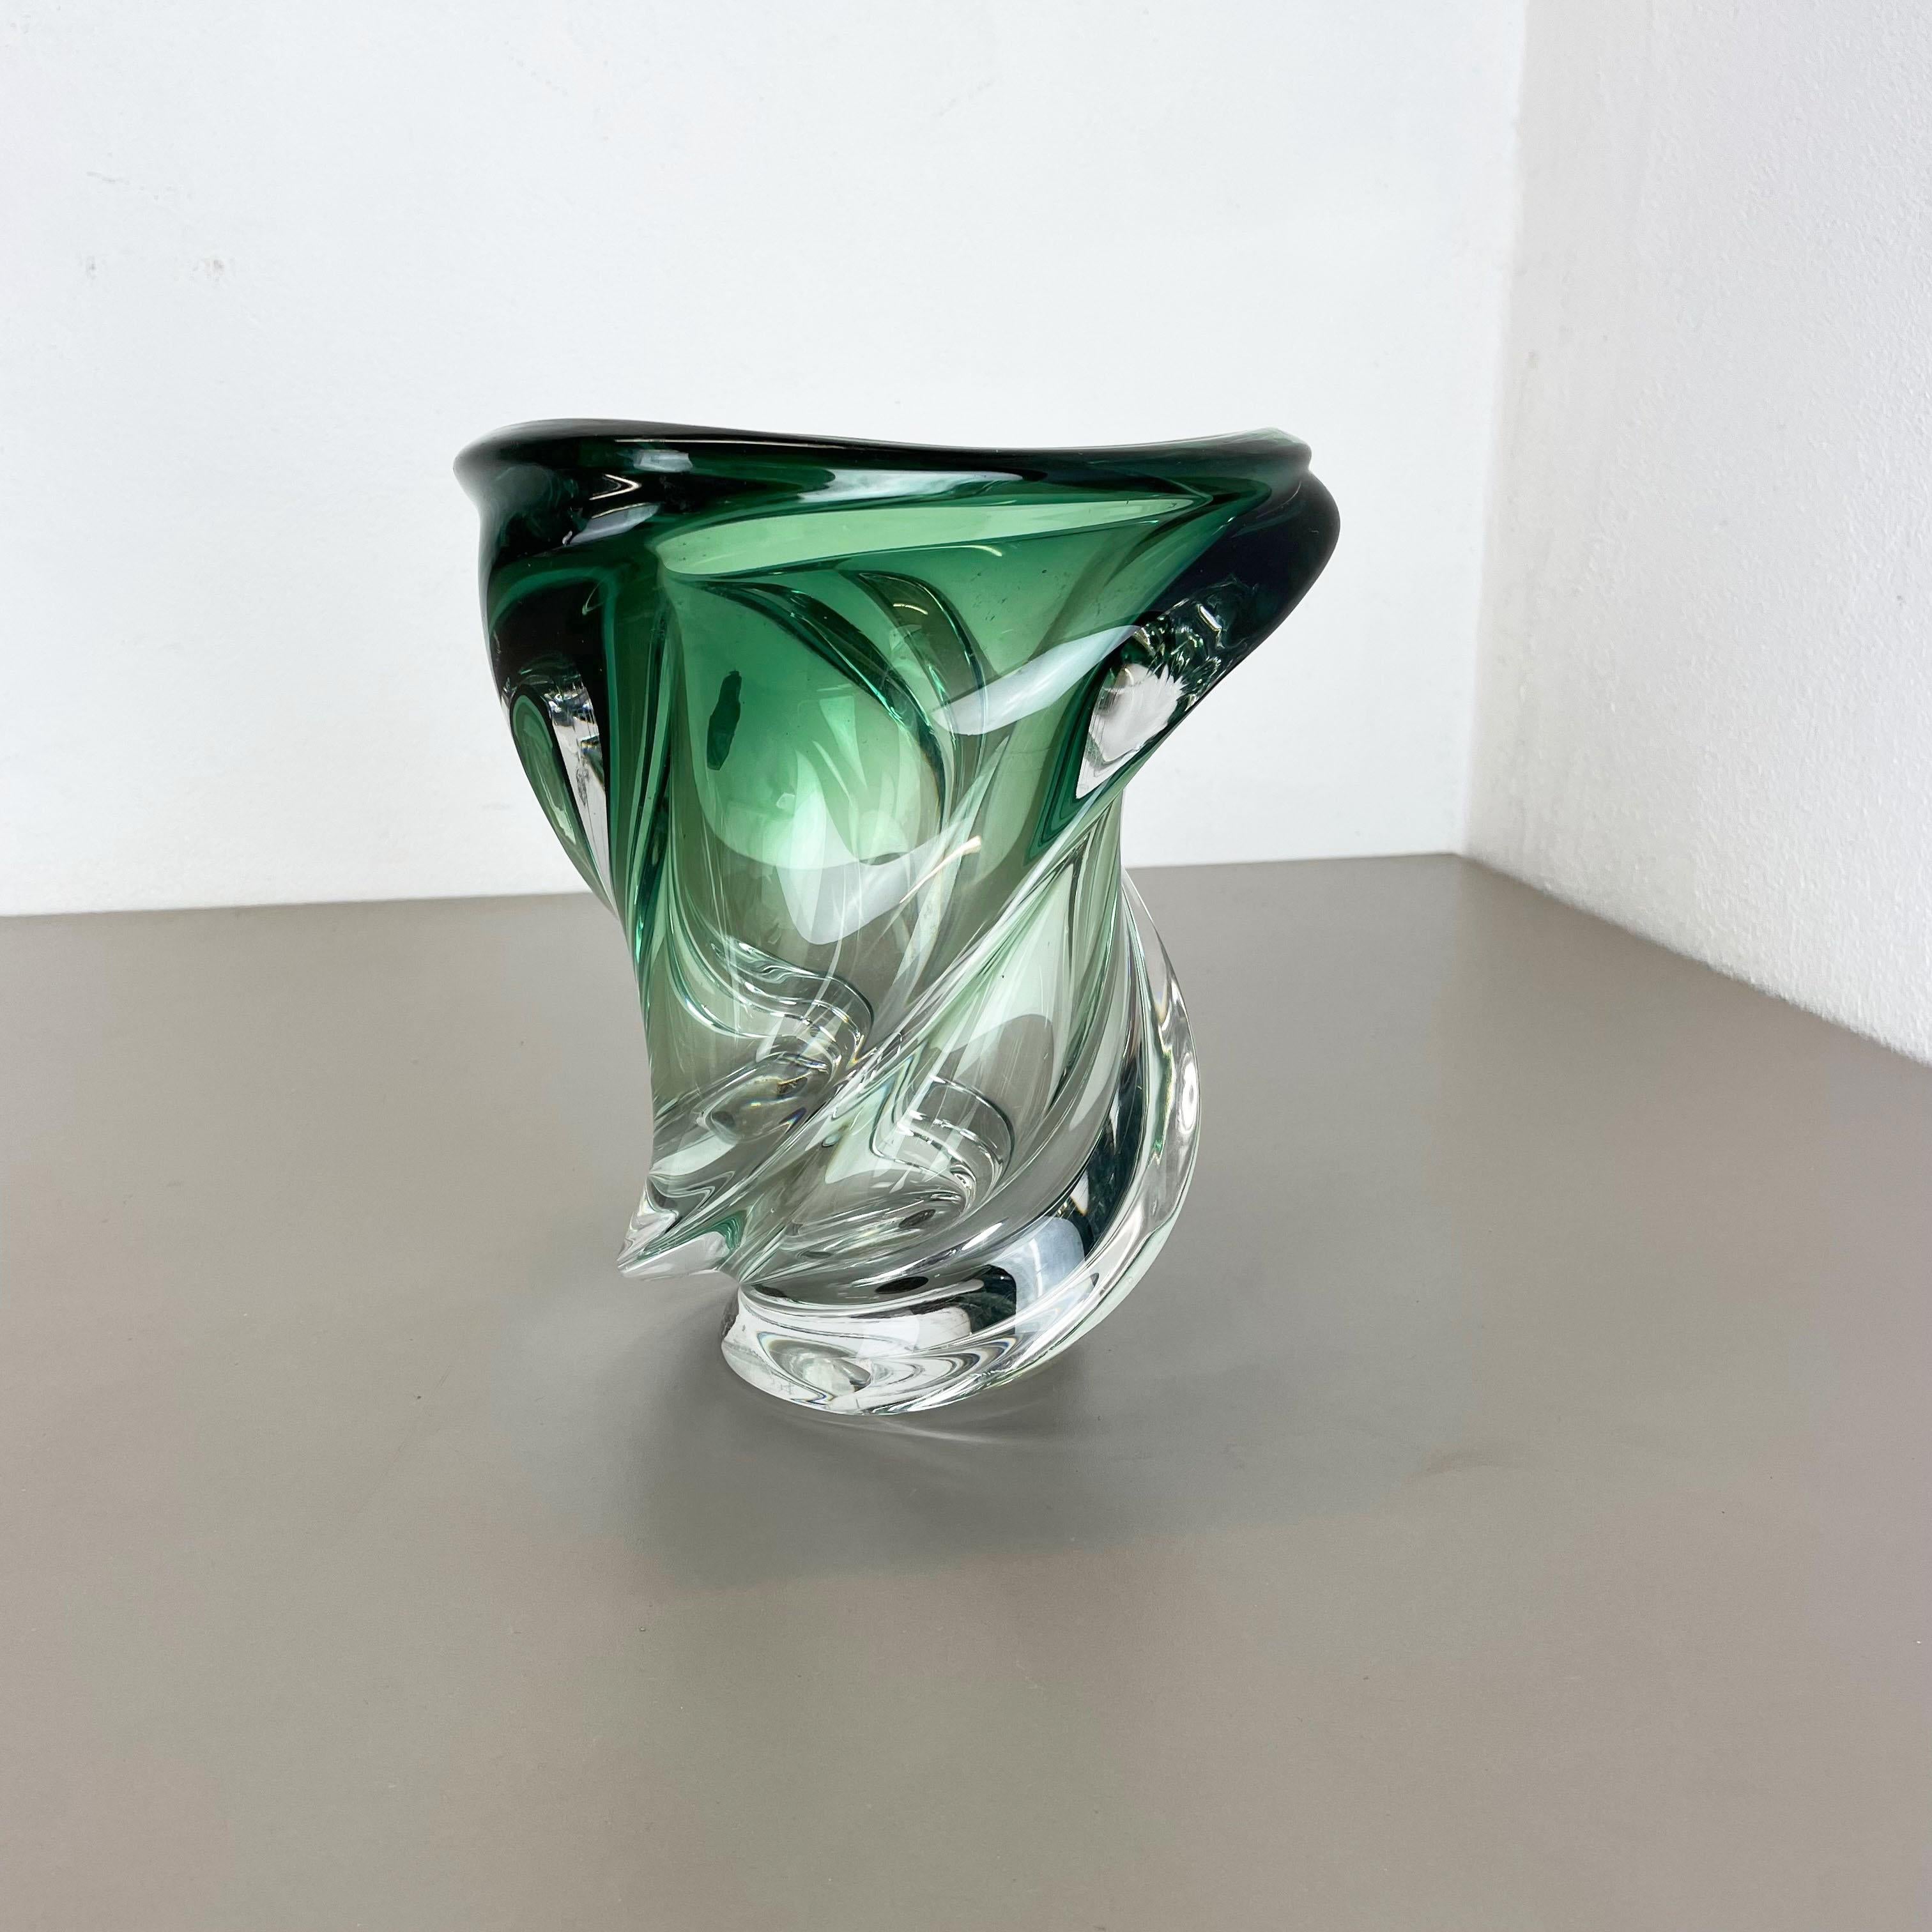 Article :

Vase en verre cristallin



Producteur : 

Val Saint Lambert, Belgique (signé sur le support et étiquette autocollante sur le dessus)


Origine : 

Belgique


Âge : 

1960s



 

Merveilleux élément en verre lourd